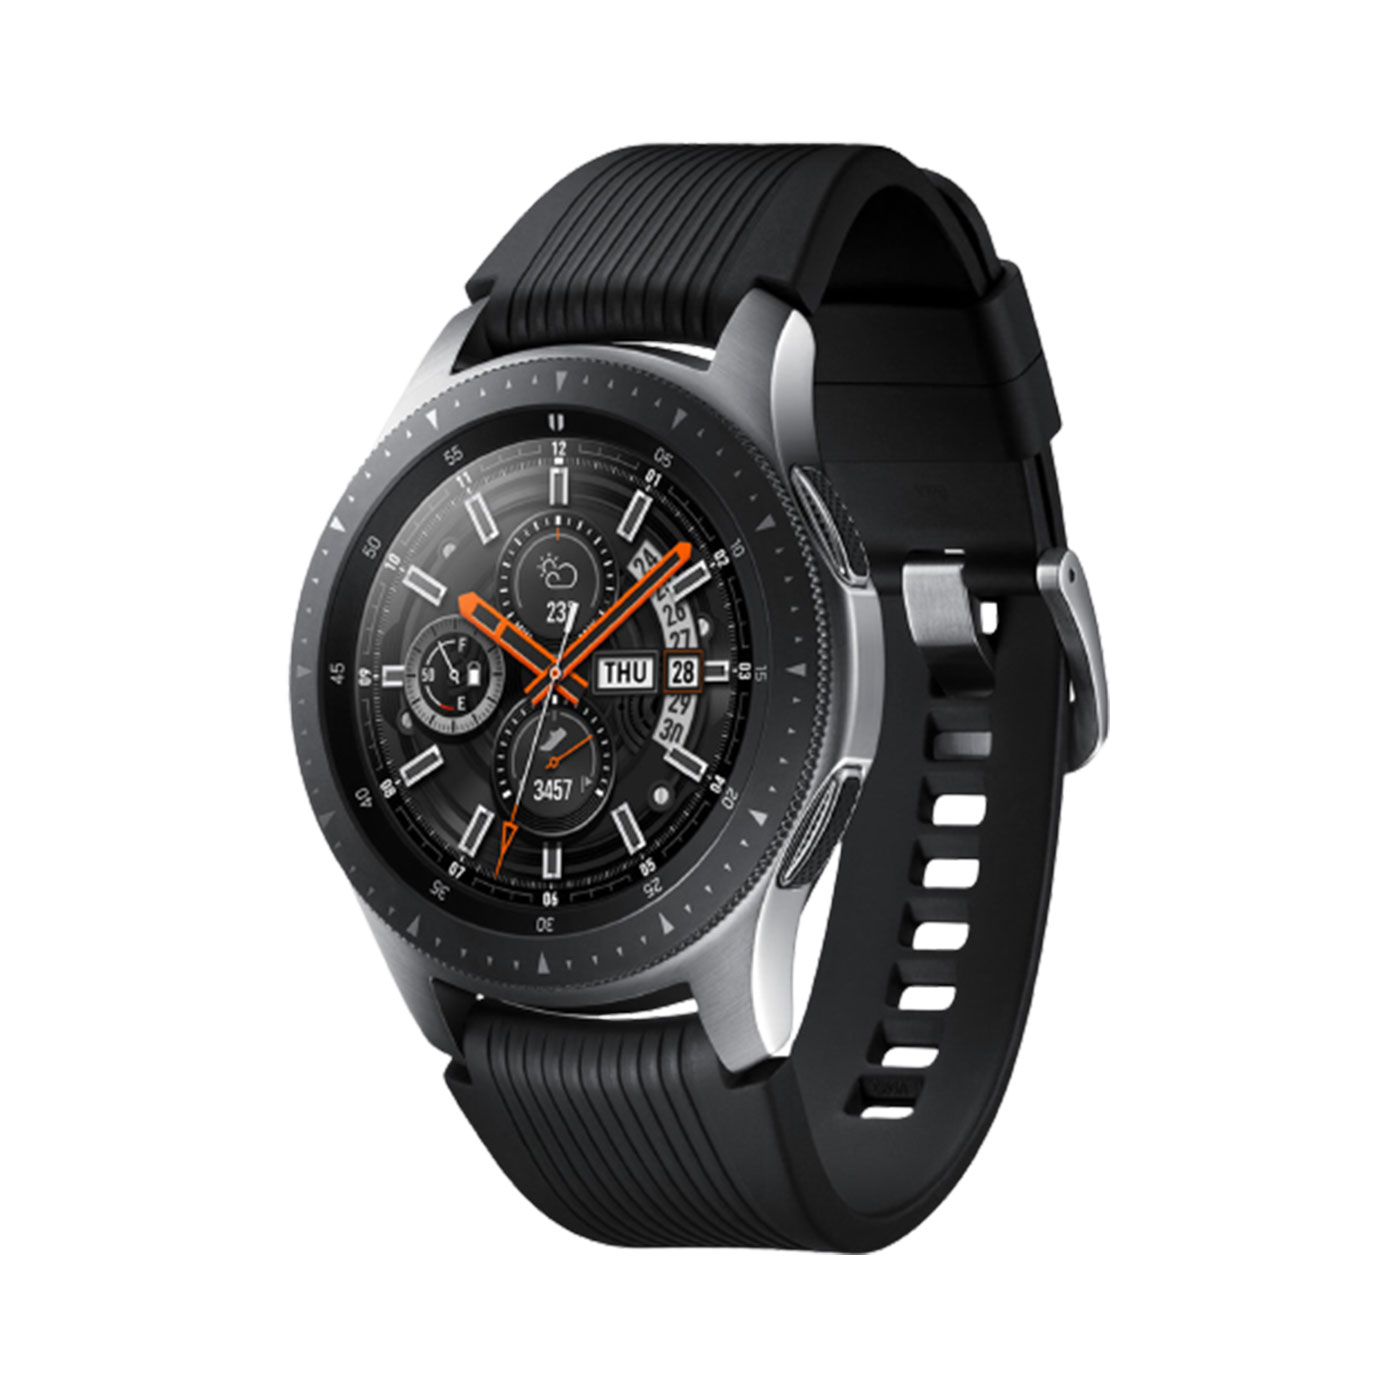 قیمت ساعت هوشمند سامسونگ مدل Galaxy Watch SM-R800 بند لاستیکی